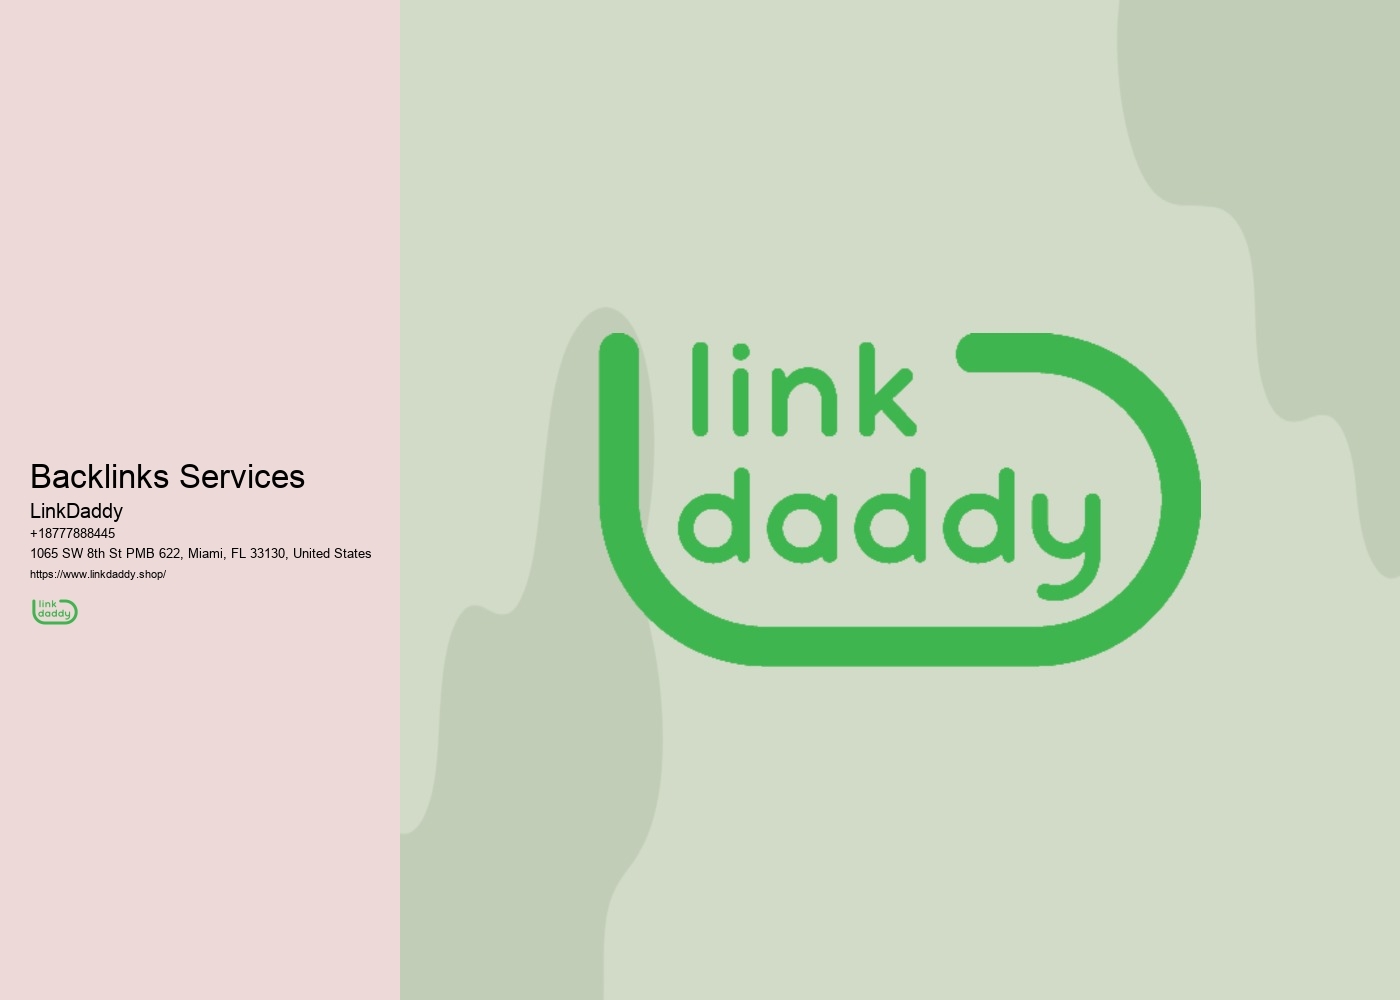 Backlinks Services